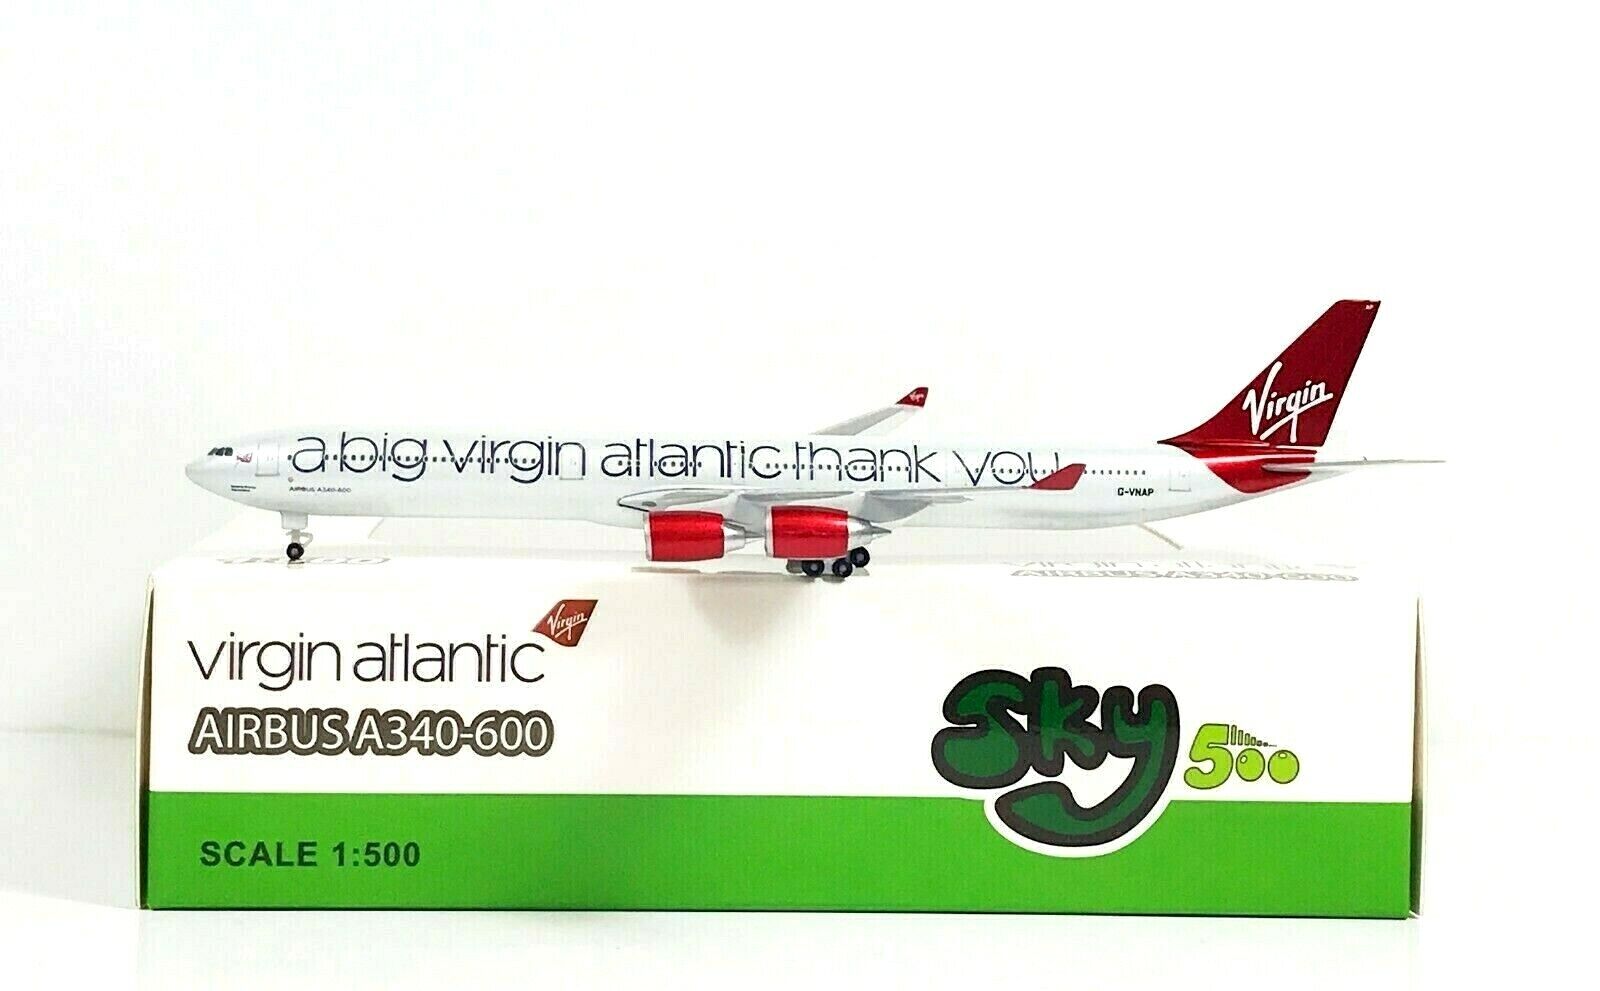 SKY500 Virgin Atlantic Airbus A340-600 1:500 